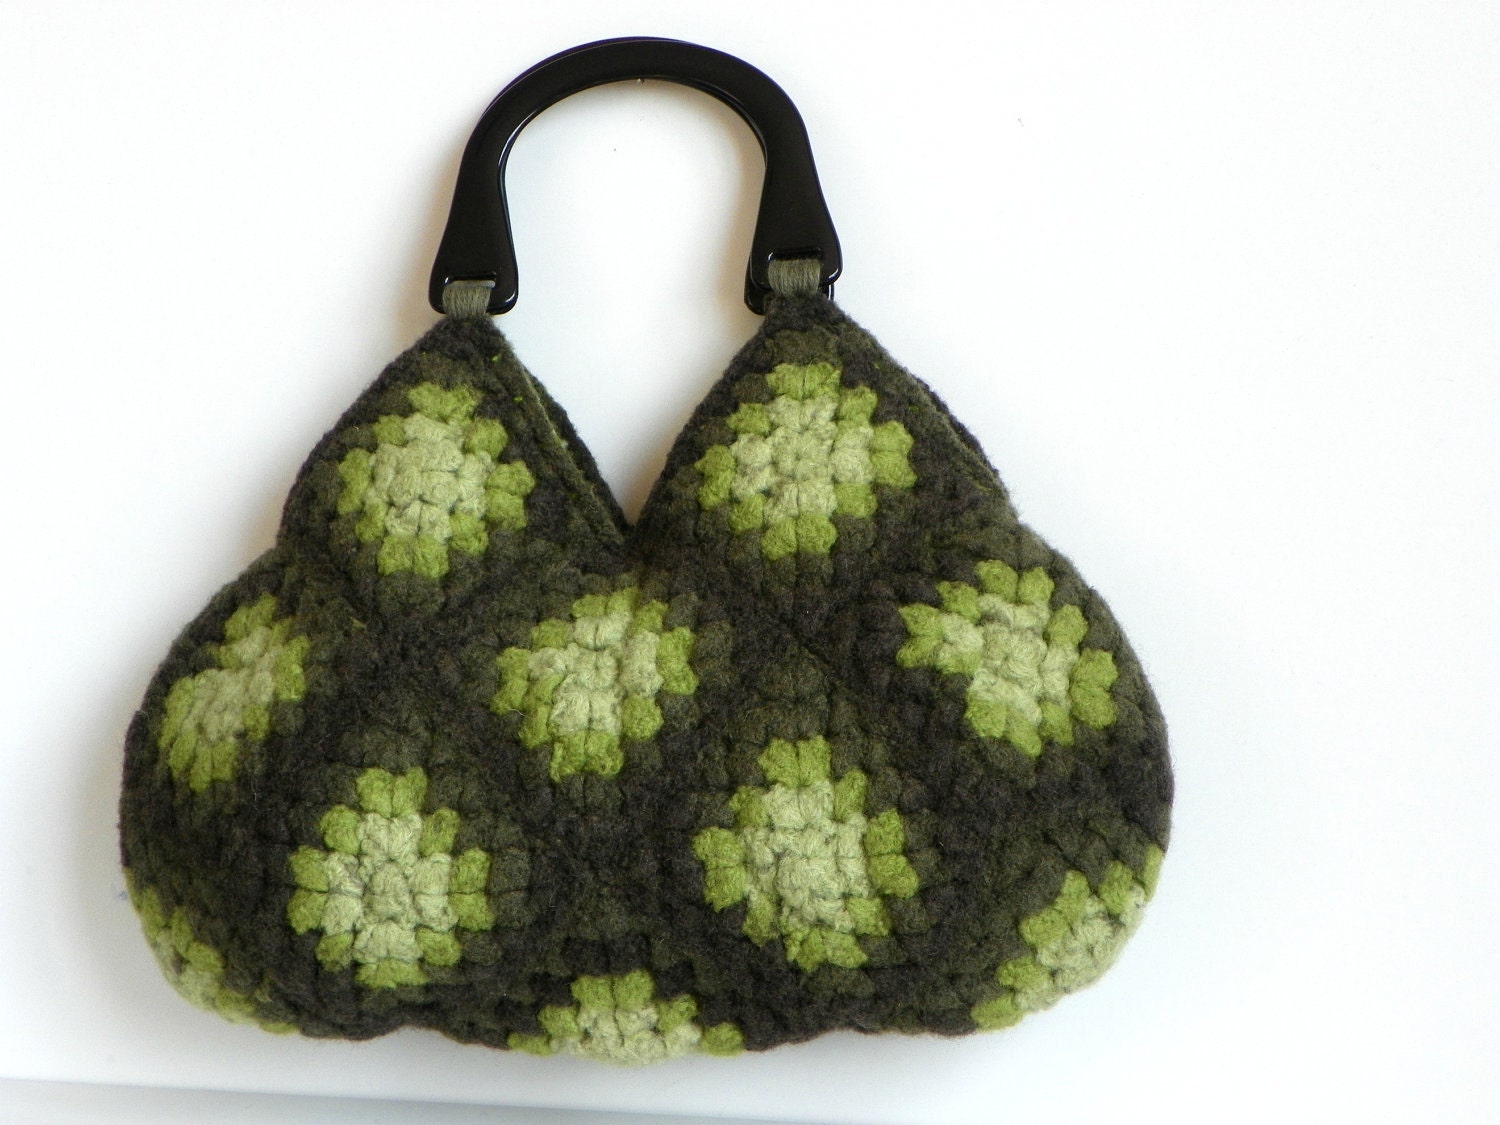 NzLbags-войлочная сумочка вязание крючком Шерсть - оттенки зеленого цвета Замечательный - Nr-0203